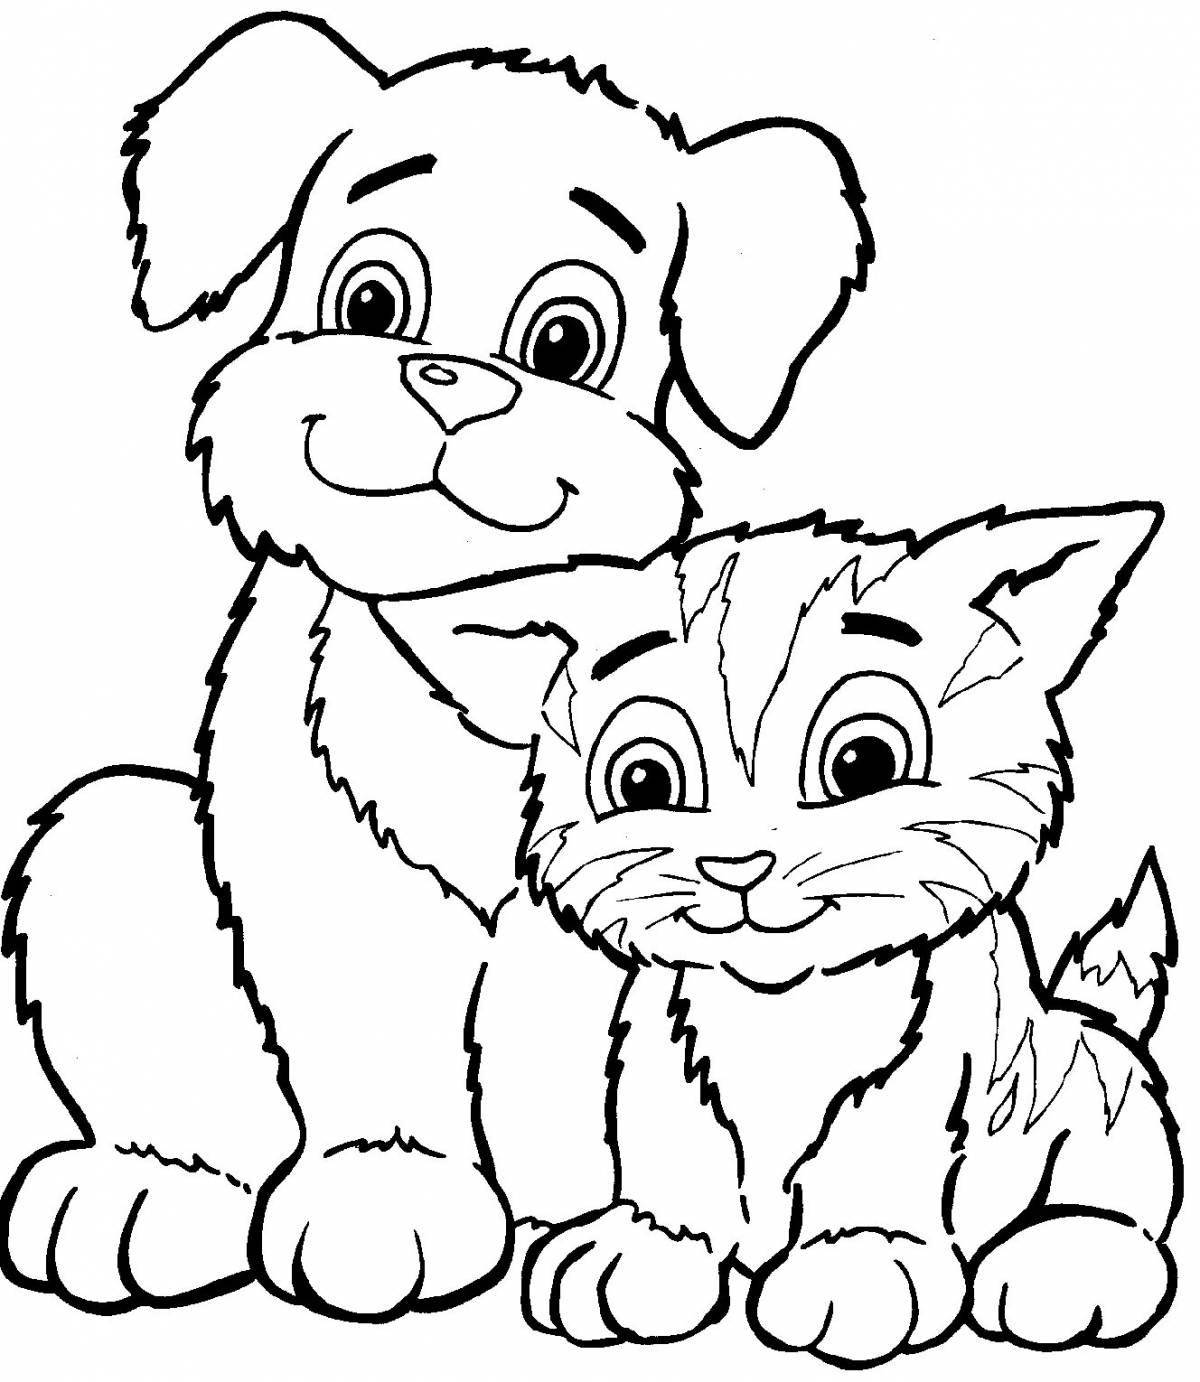 Воображаемые раскраски домашние животные для детей 5-7 лет